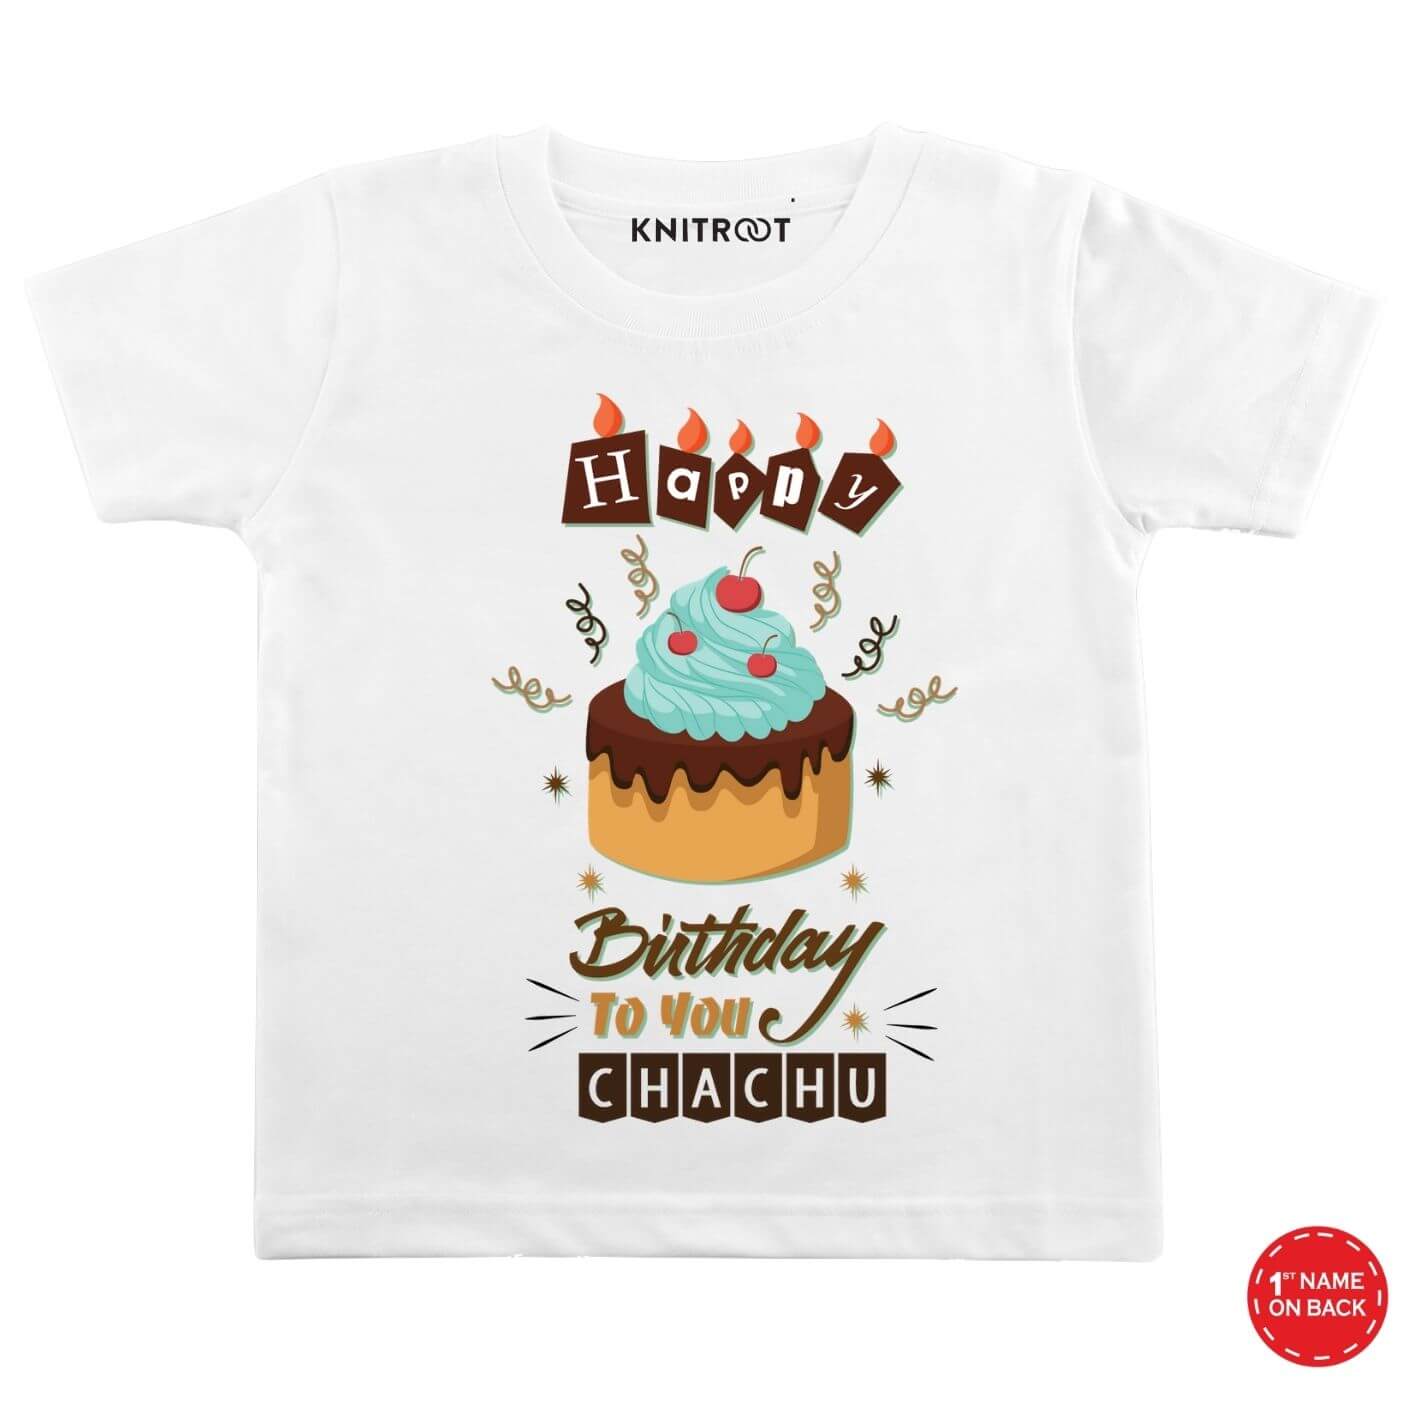 ❤️ Happy Birthday Cake For Chacha Ji